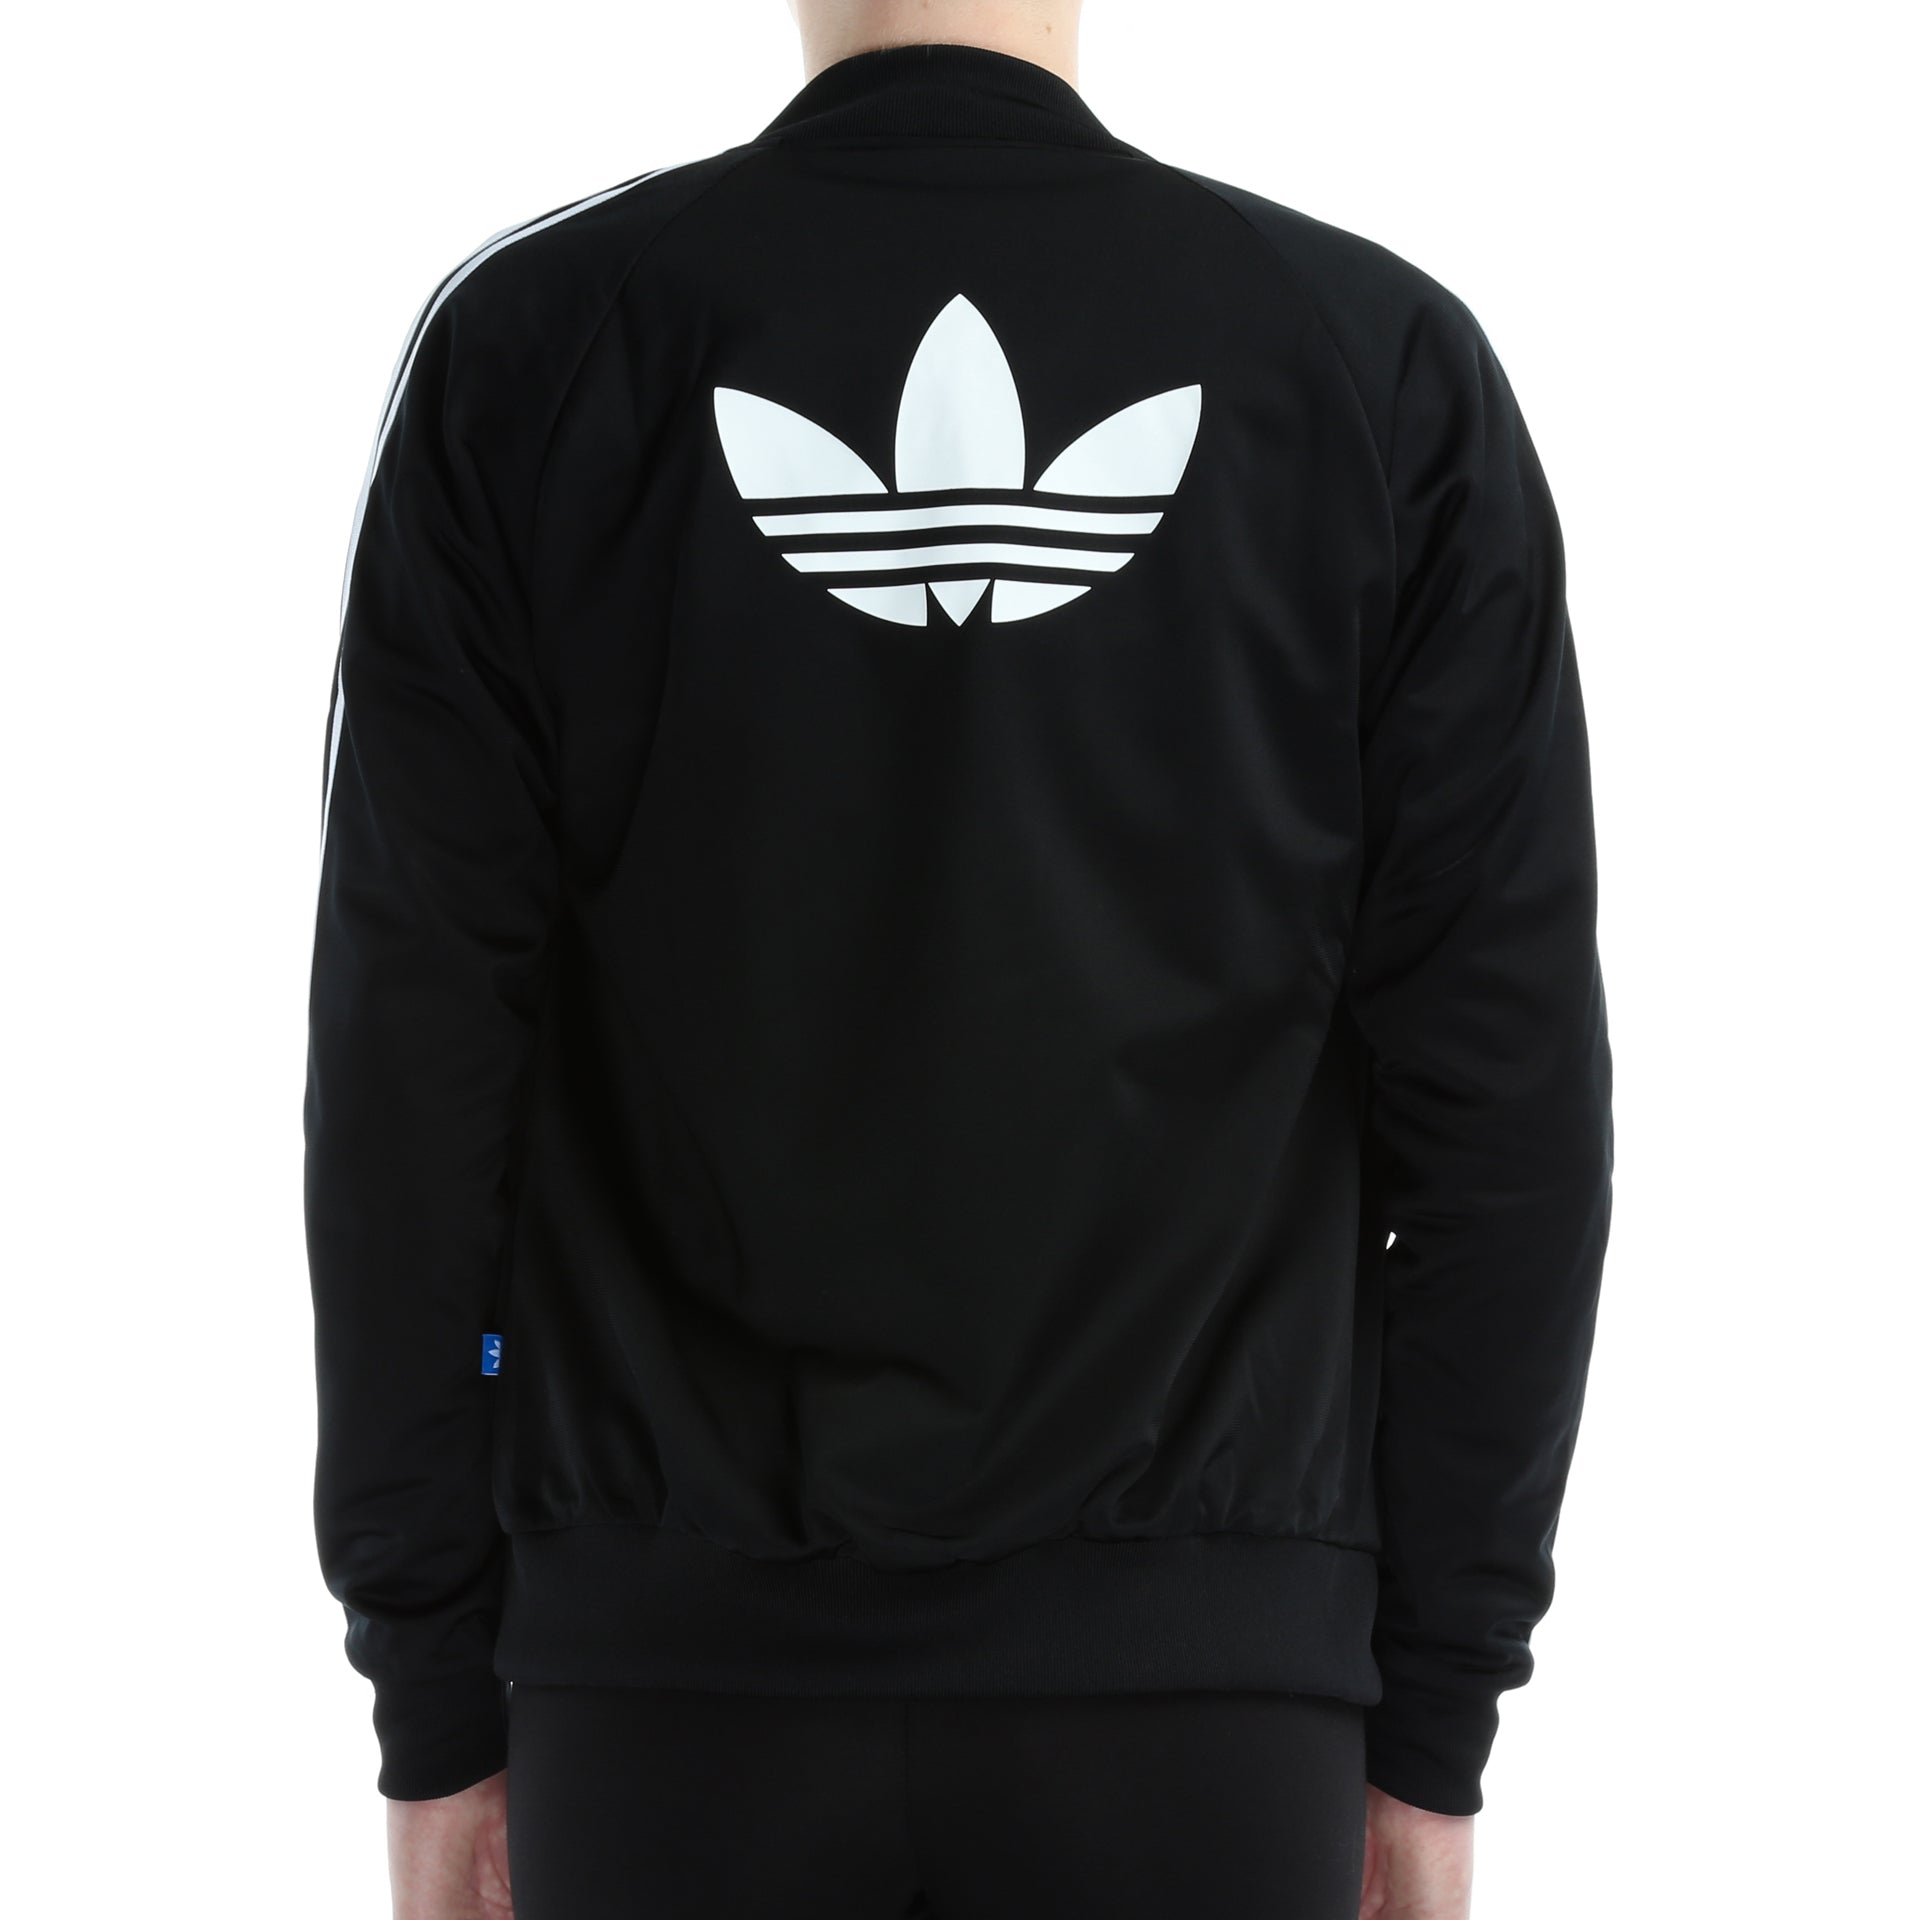 adidas track jacket with logo on back